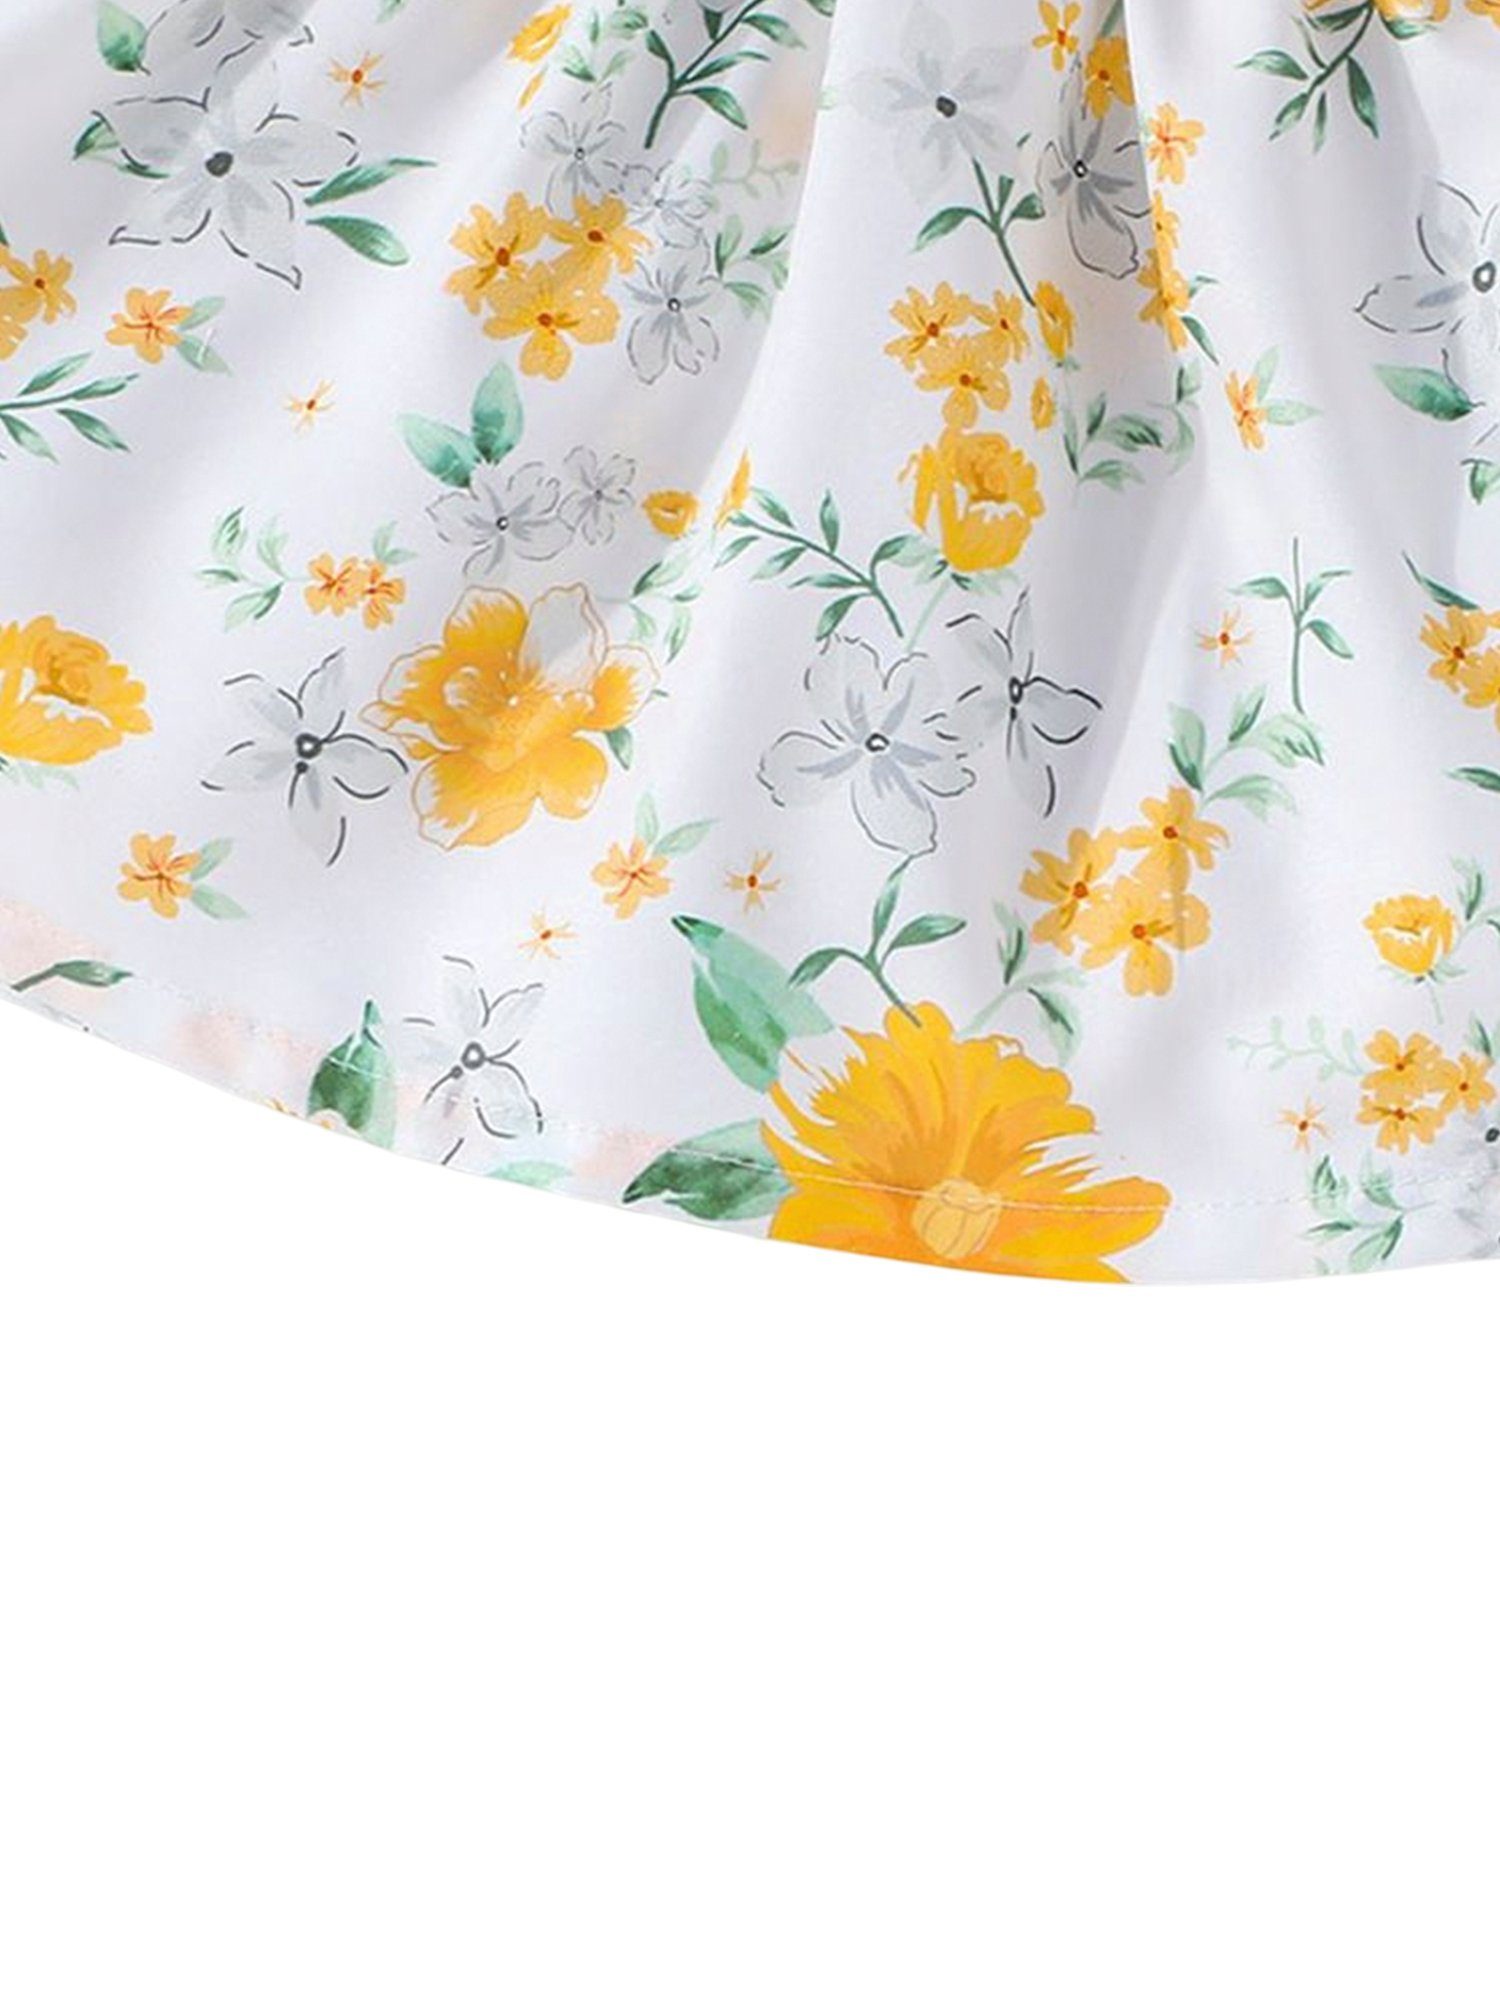 LAPA Rüschen Baby knielanges Blumendruck Druckkleid Sommerkleid mit (2-tlg)